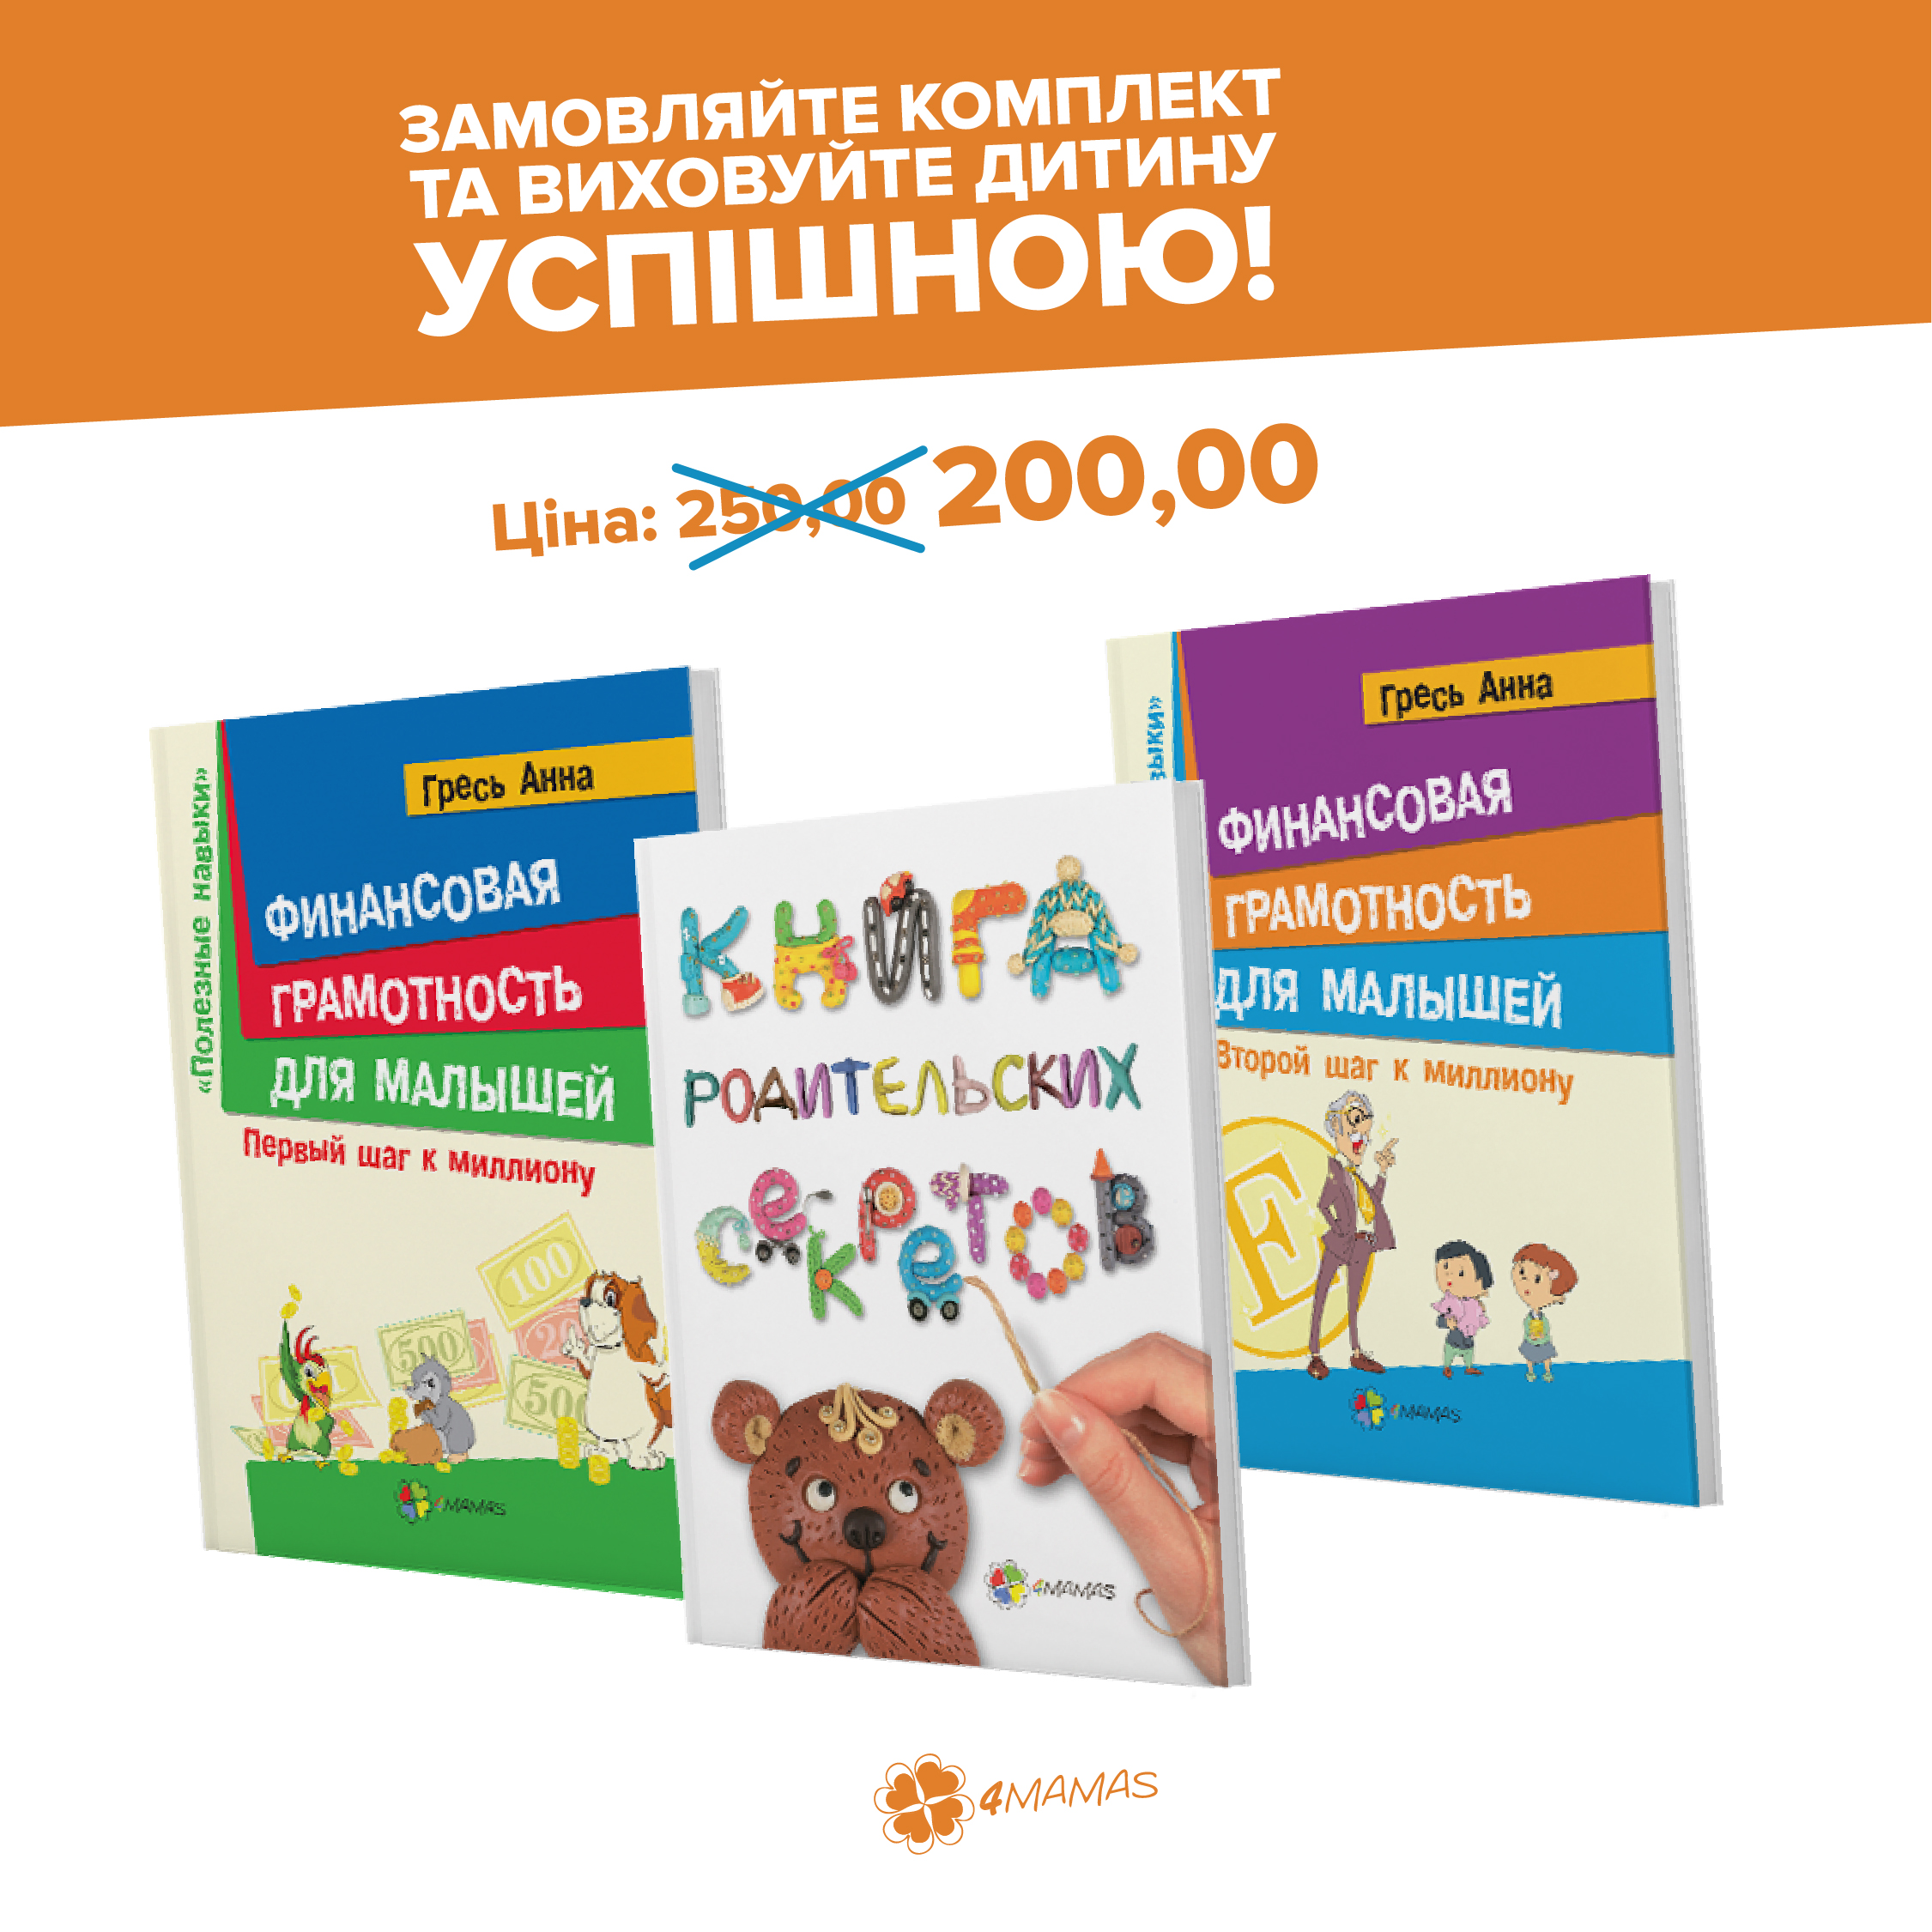 Комплект книг для батьків, які хочуть виховати успішну дитину!